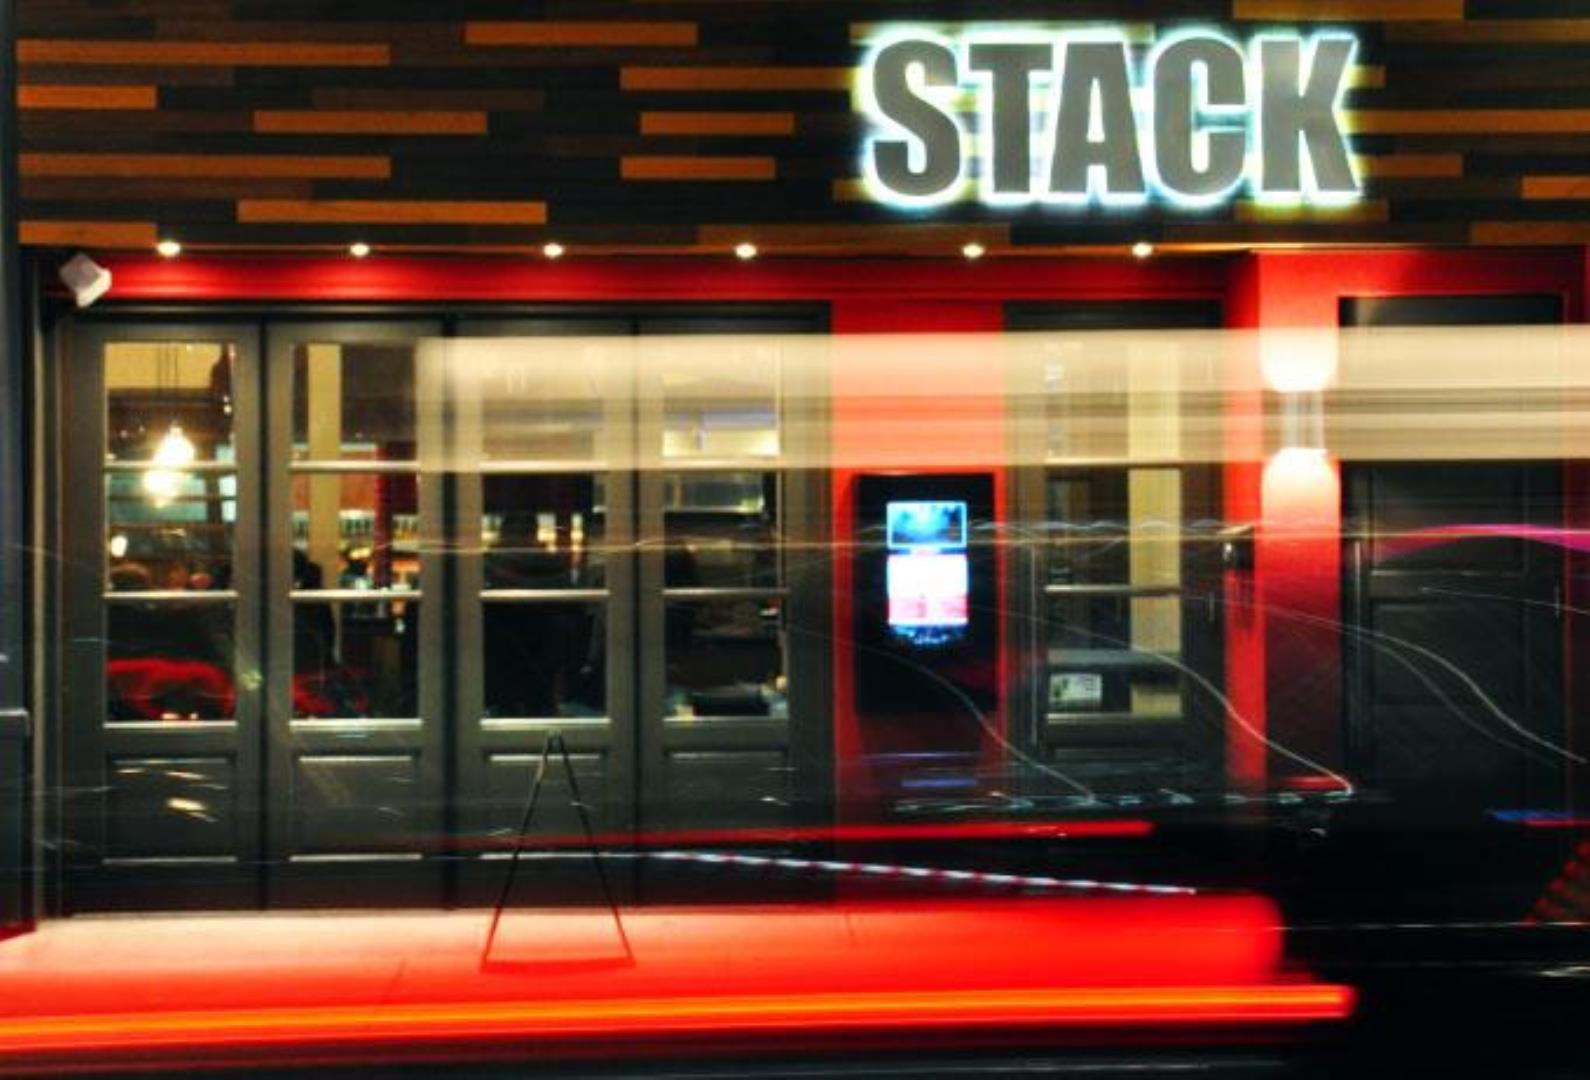 stacks restaurant